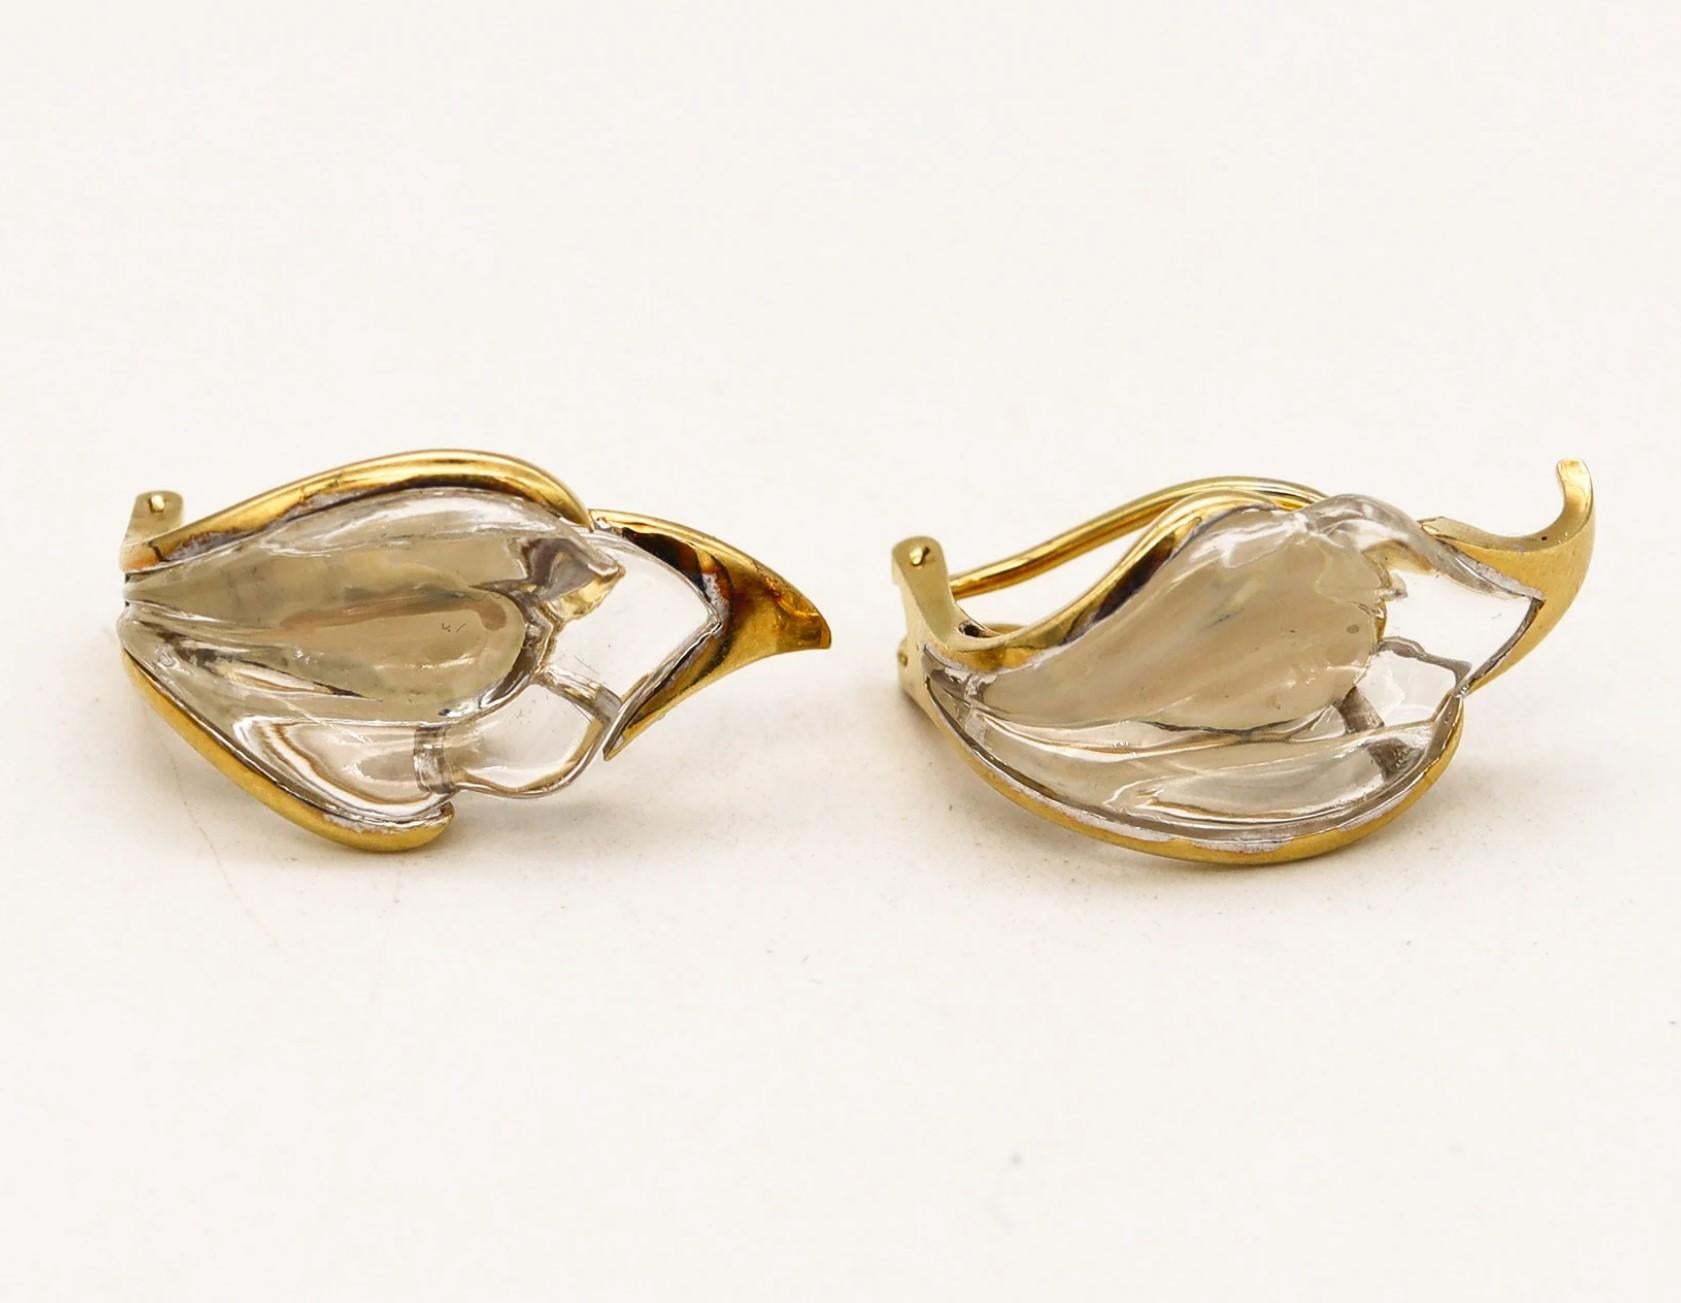 Modernist Tiffany & Co 1970 Elsa Peretti Rock Quartz Lilies Clips on Earrings in 18Kt Gold